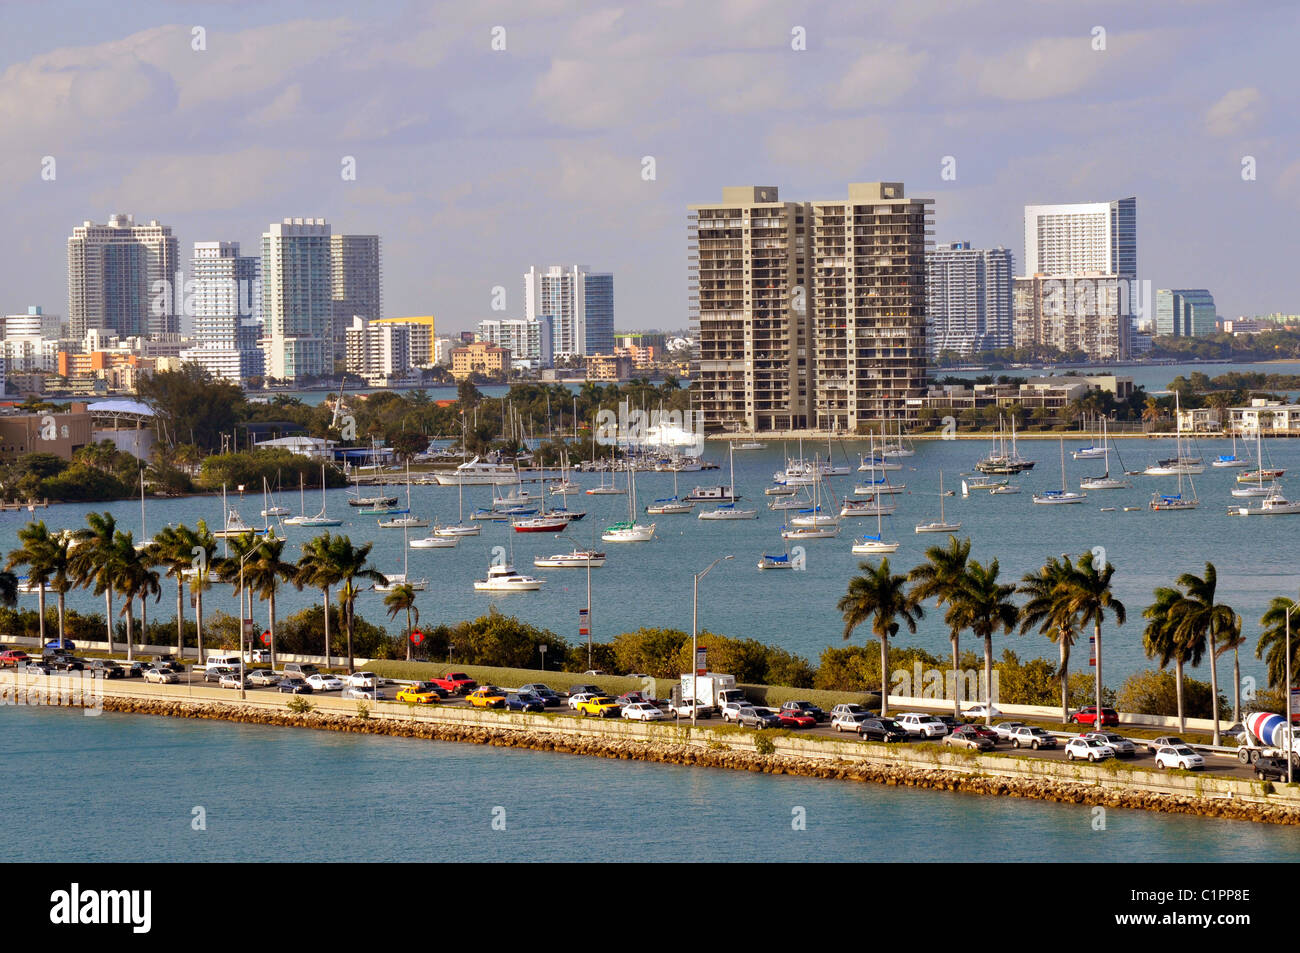 Vues de Miami Floride skyline Macarthur Causeway et le port de navires de croisière au départ Banque D'Images